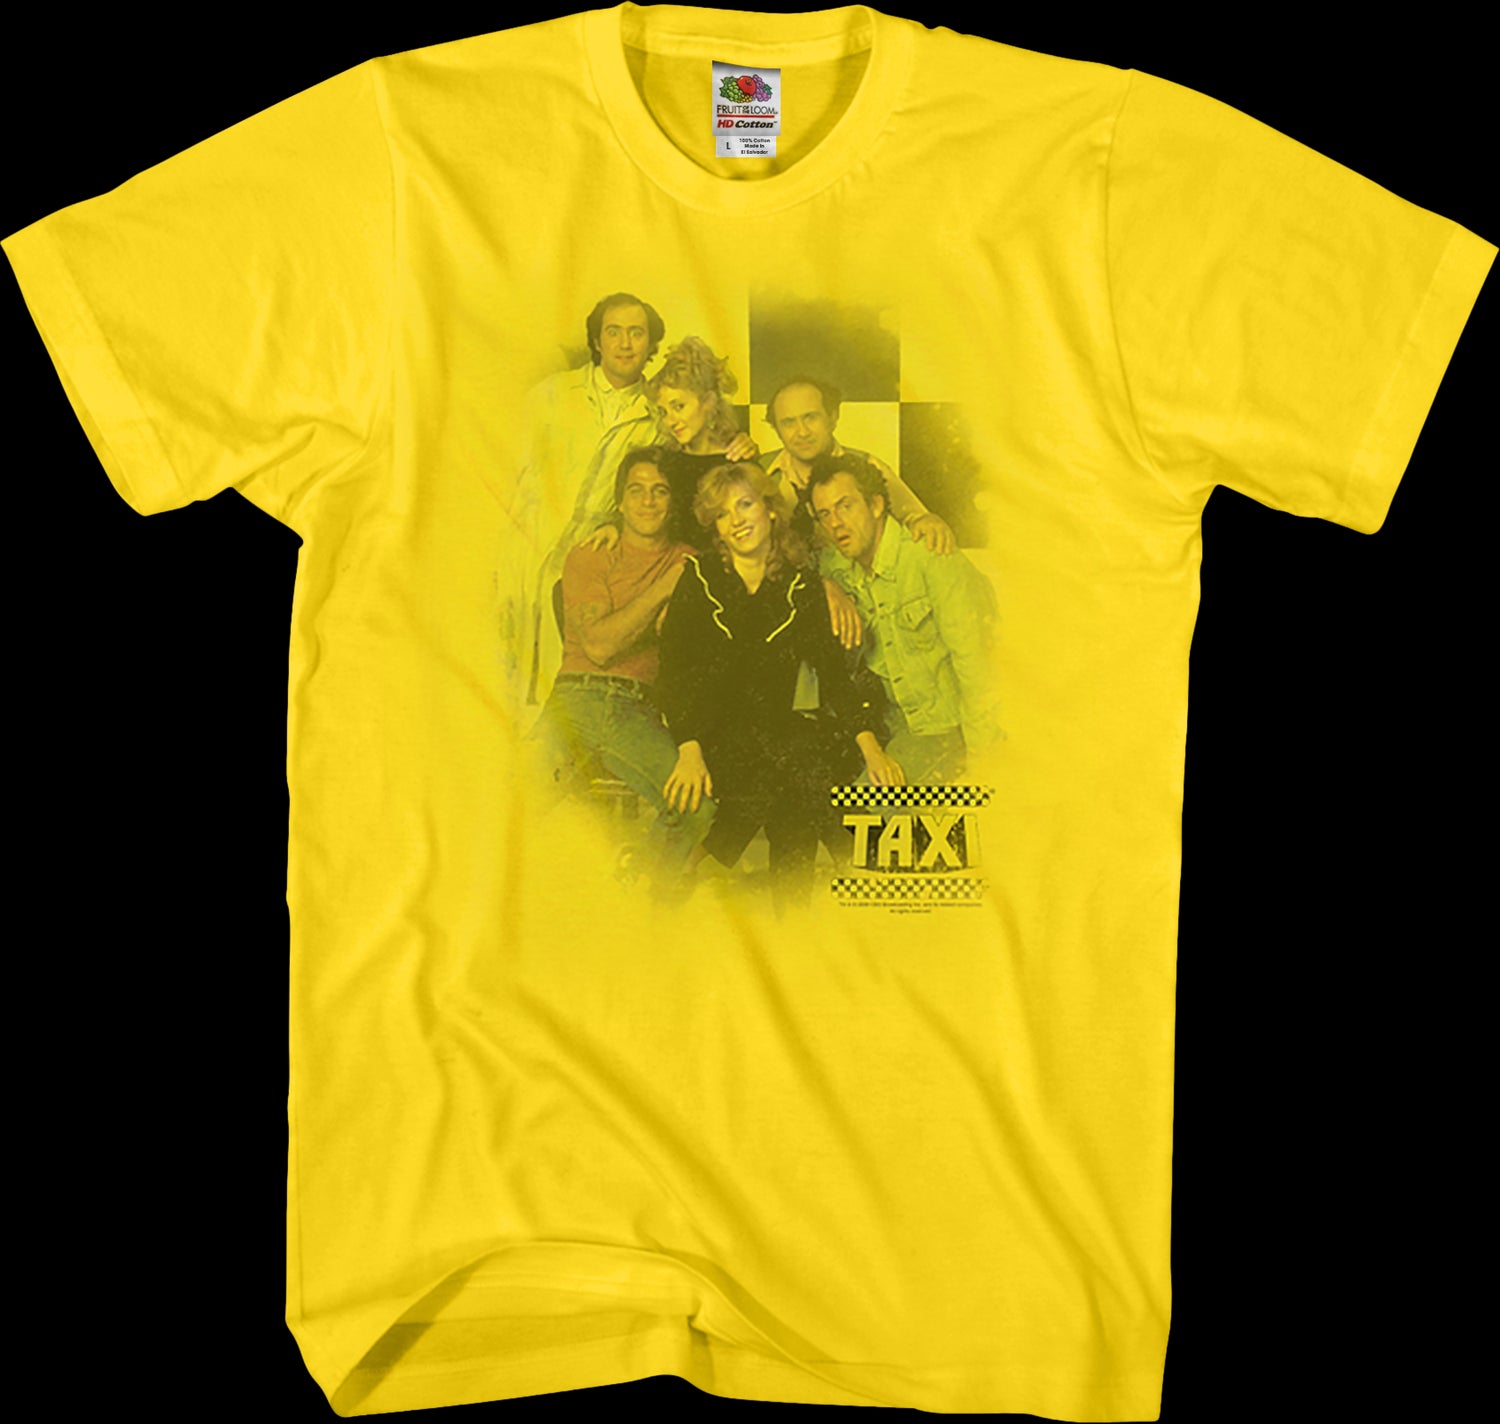 Cast TAXI T-Shirt: Tony Danza, Christopher Lloyd, Danny Devito